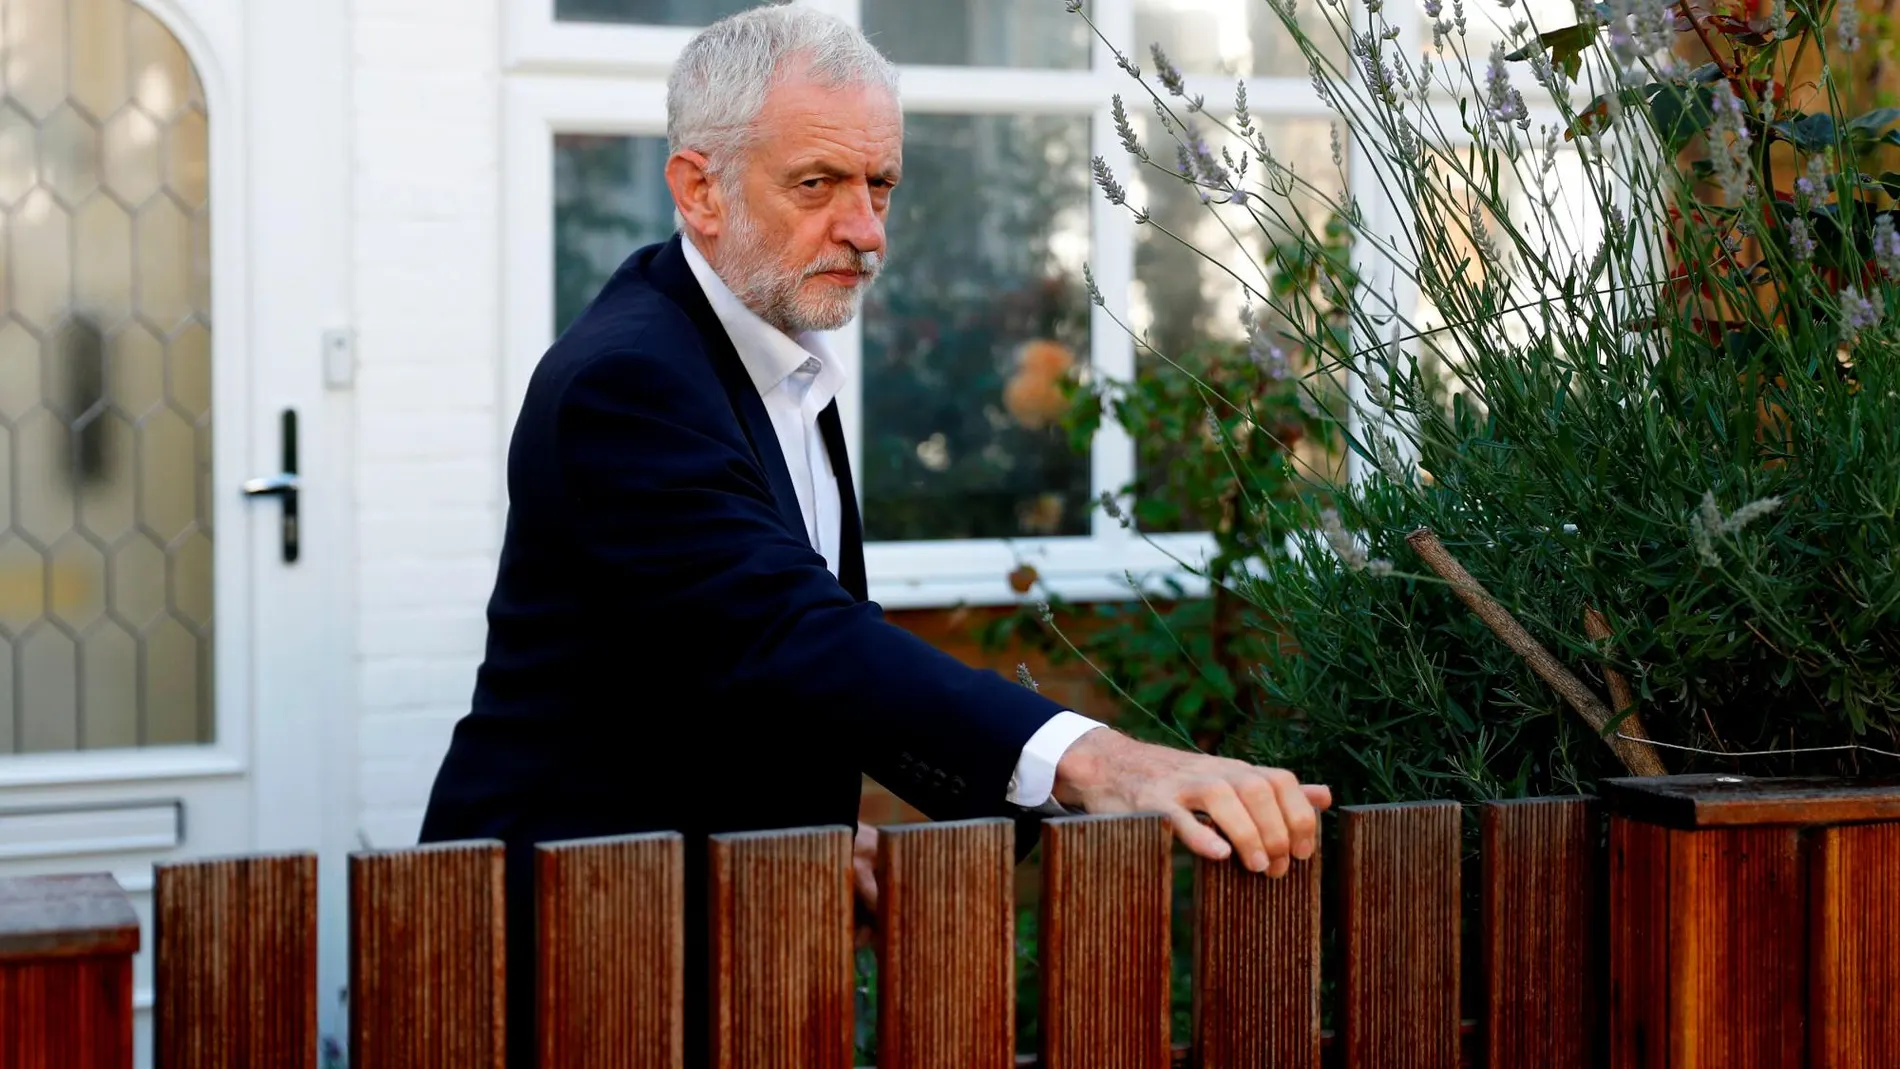 El líder del Partido Laborista, Jeremy Corbyn, en la puerta de su casa el pasado 3 de julio